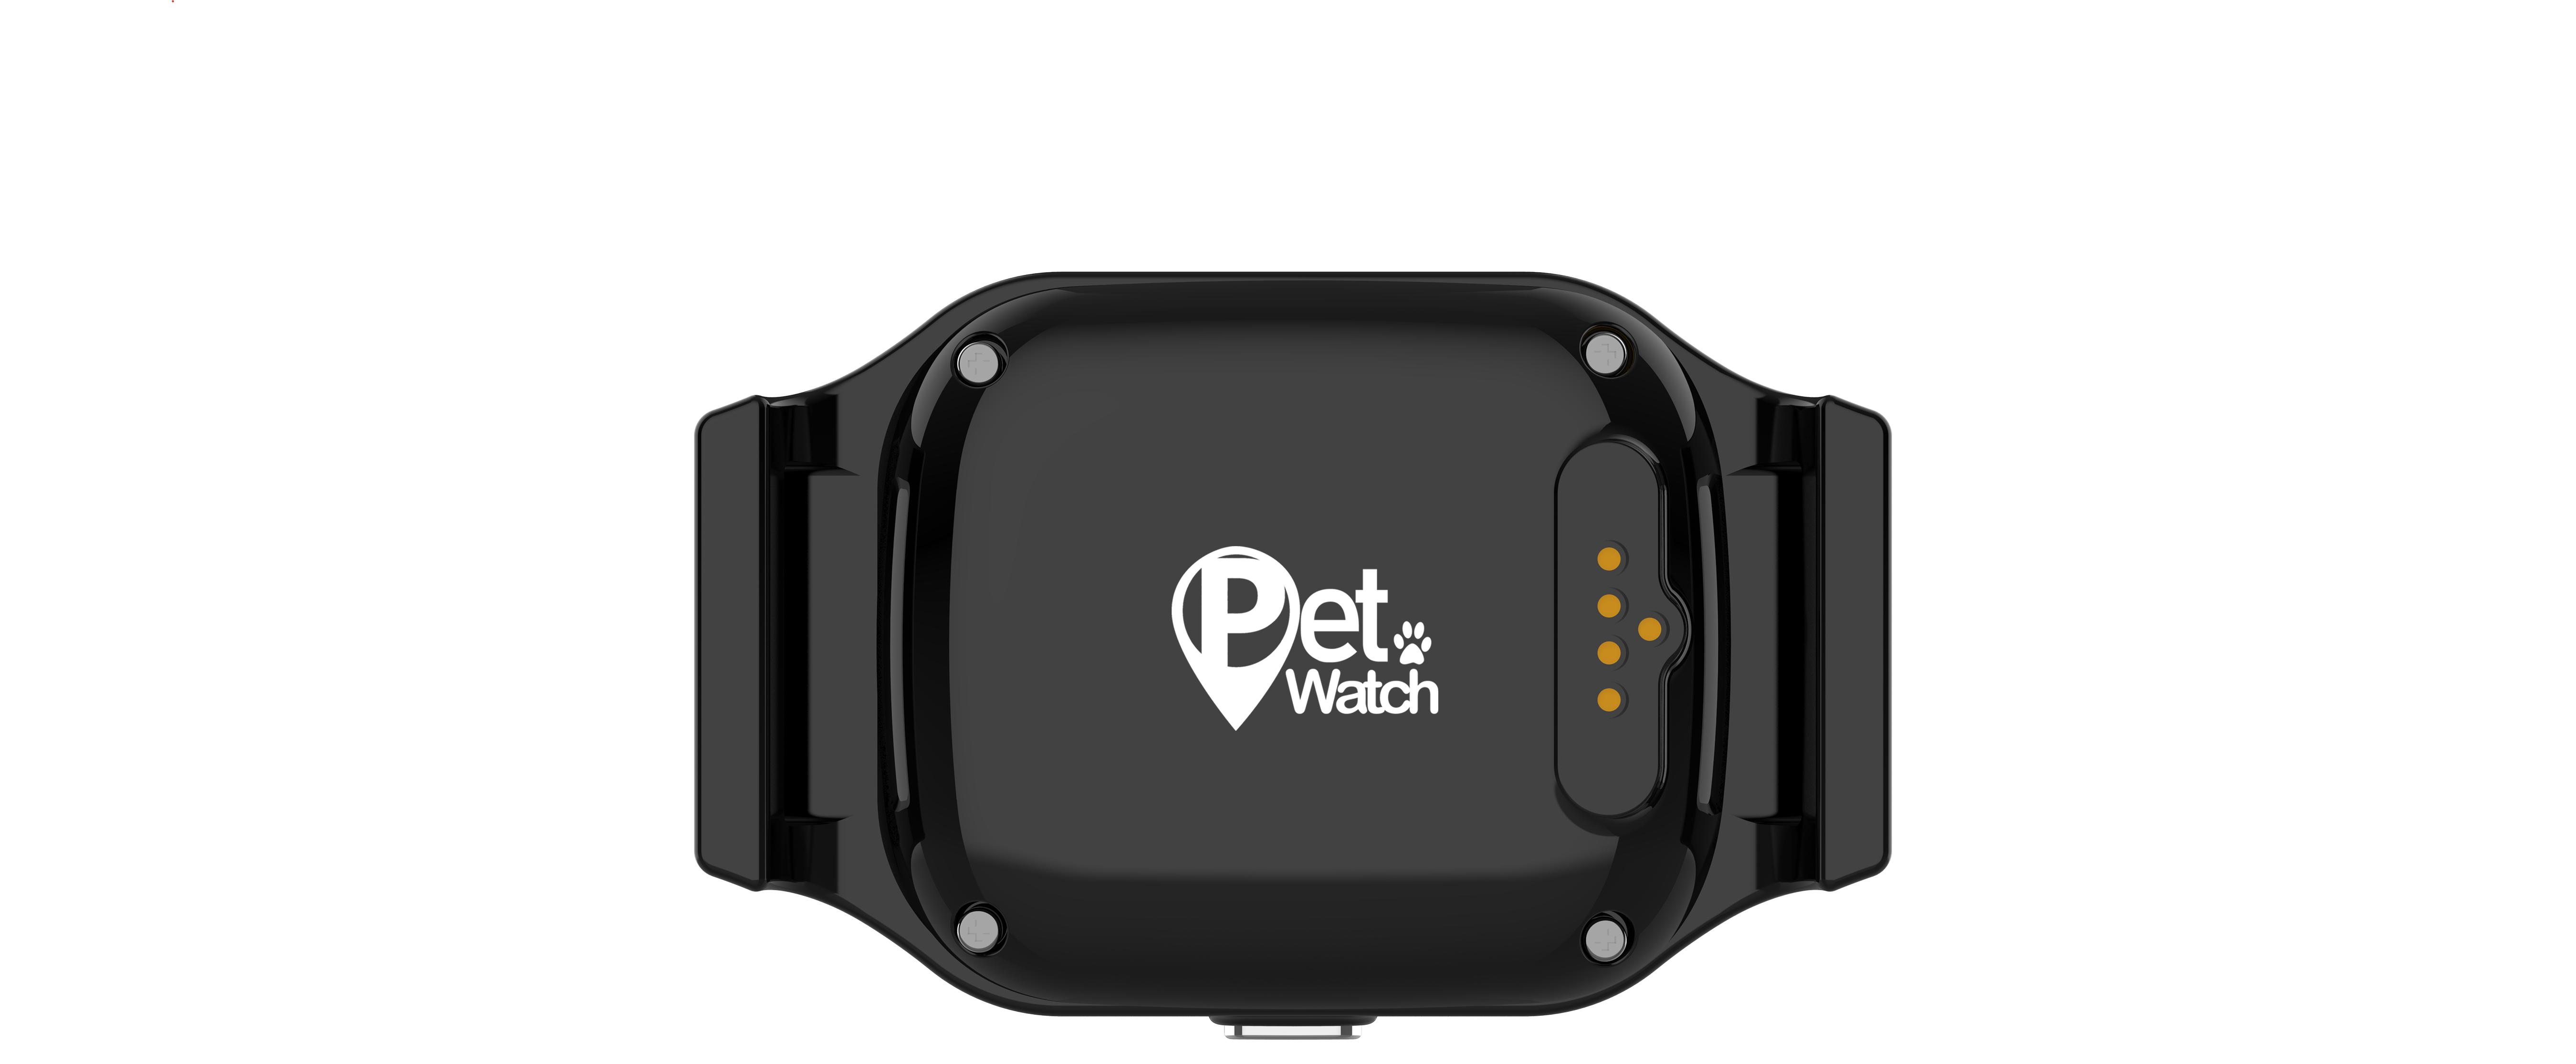 שעון לאיתור חיות מחמד Pet Watch 2.0 - צבע שחור שנה אחריות ע"י היבואן הרשמי